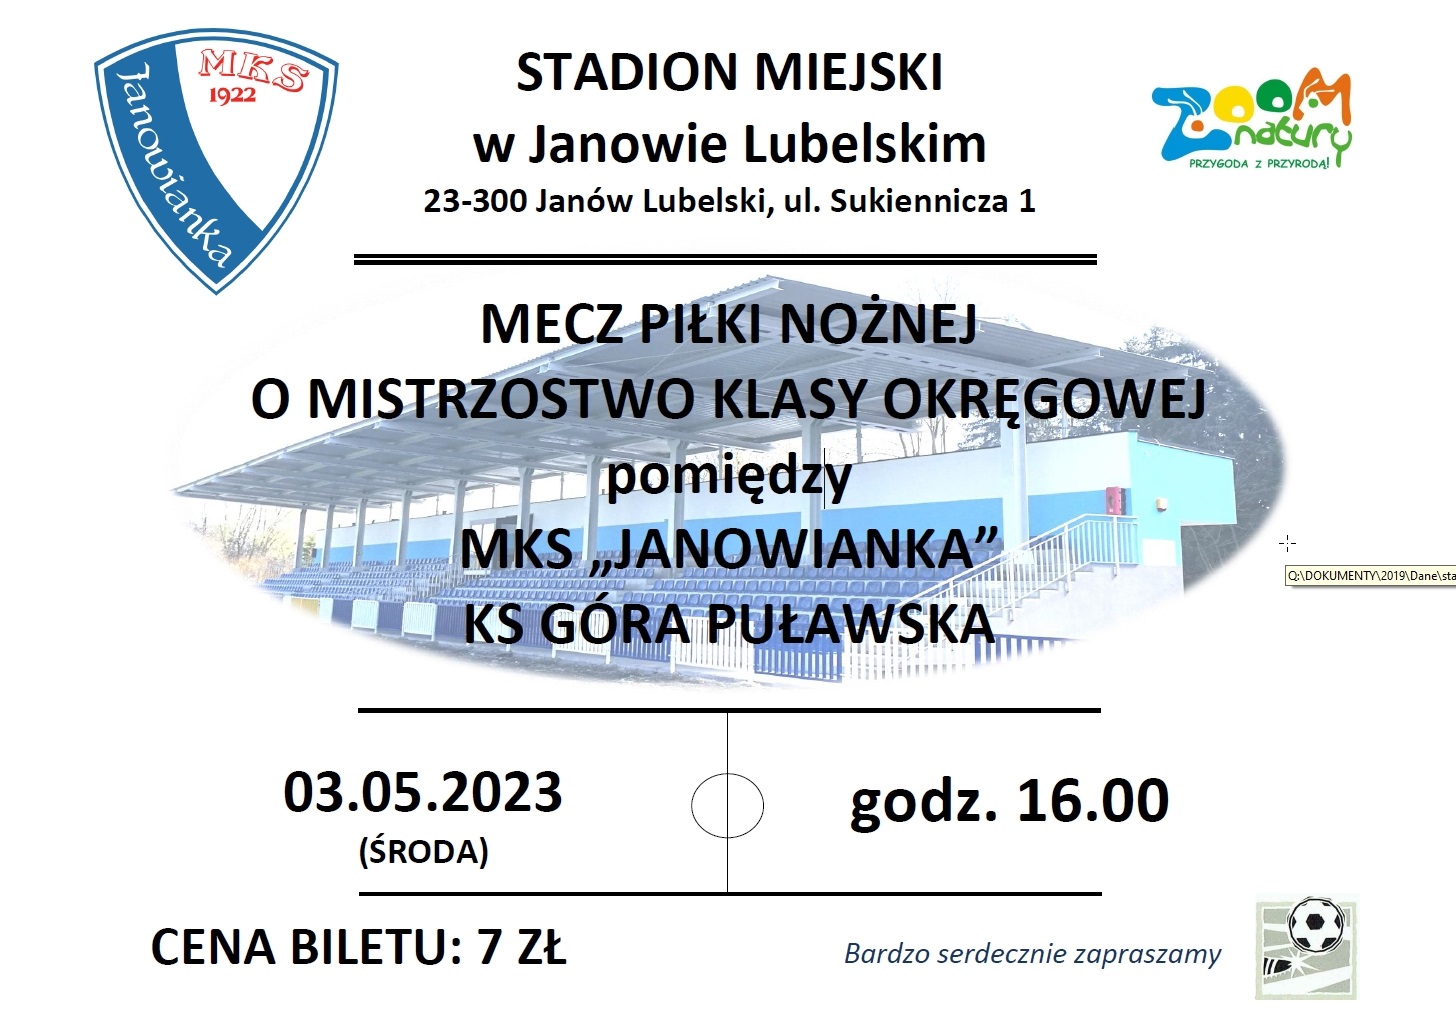 Plakat na mecz pomiędzy MKS Janowianka, a KS Góra Puławska który odbędzie się 3 maja 2023 roku w środę o godzinie 16:00 na Stadionie Miejskim w Janowie Lubelskim przy ulicy Sukienniczej 1. Cena biletu 7 zł. 